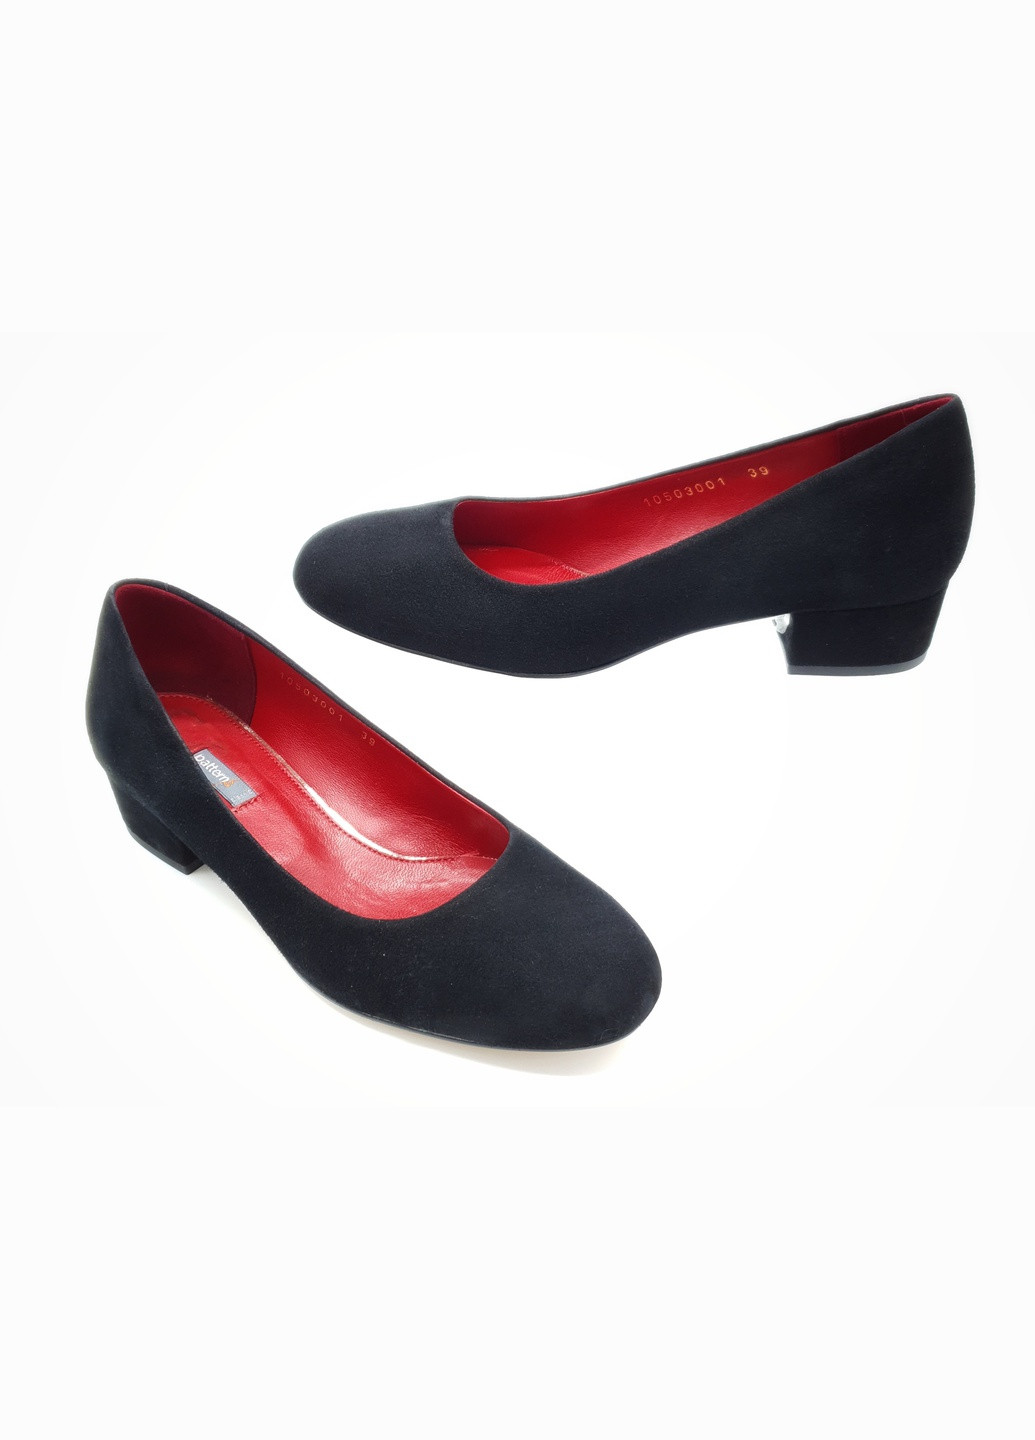 Жіночі туфлі чорні замшеві P-19-10 24 см (р) patterns (259299726)